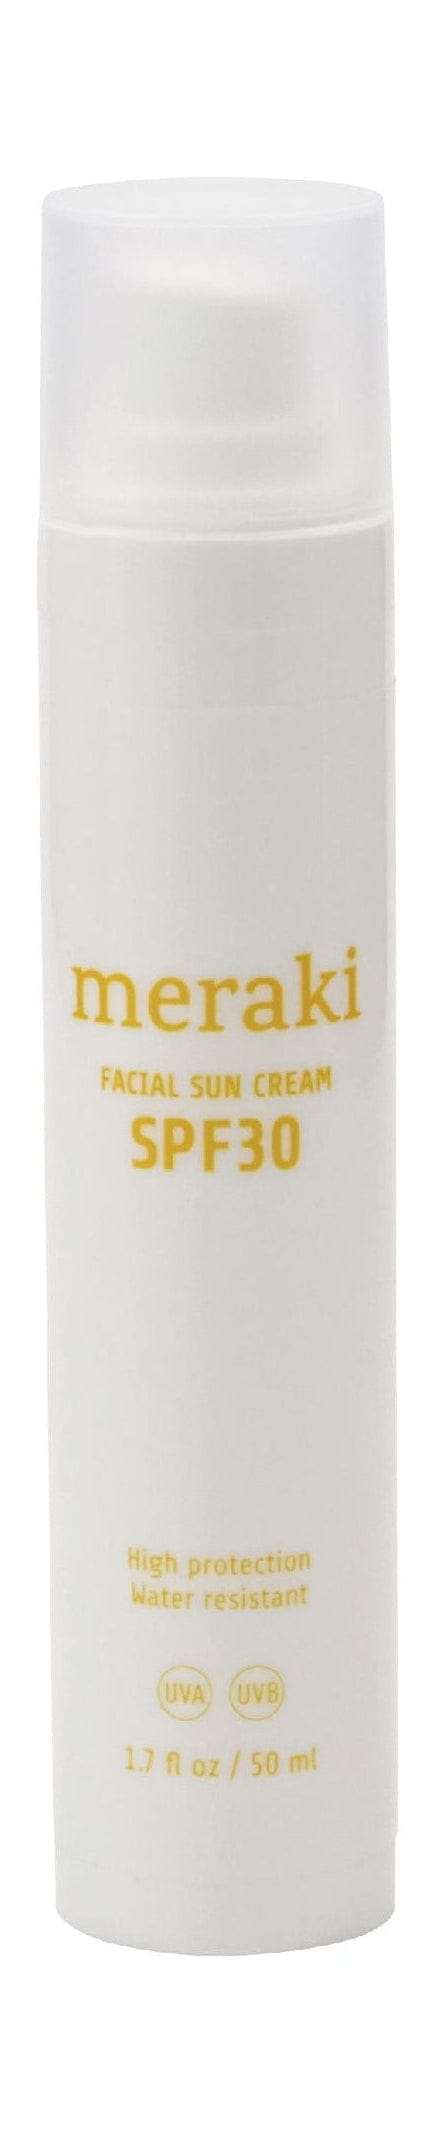 Meraki Facial Sun Cream 50 ml, suavemente perfumada